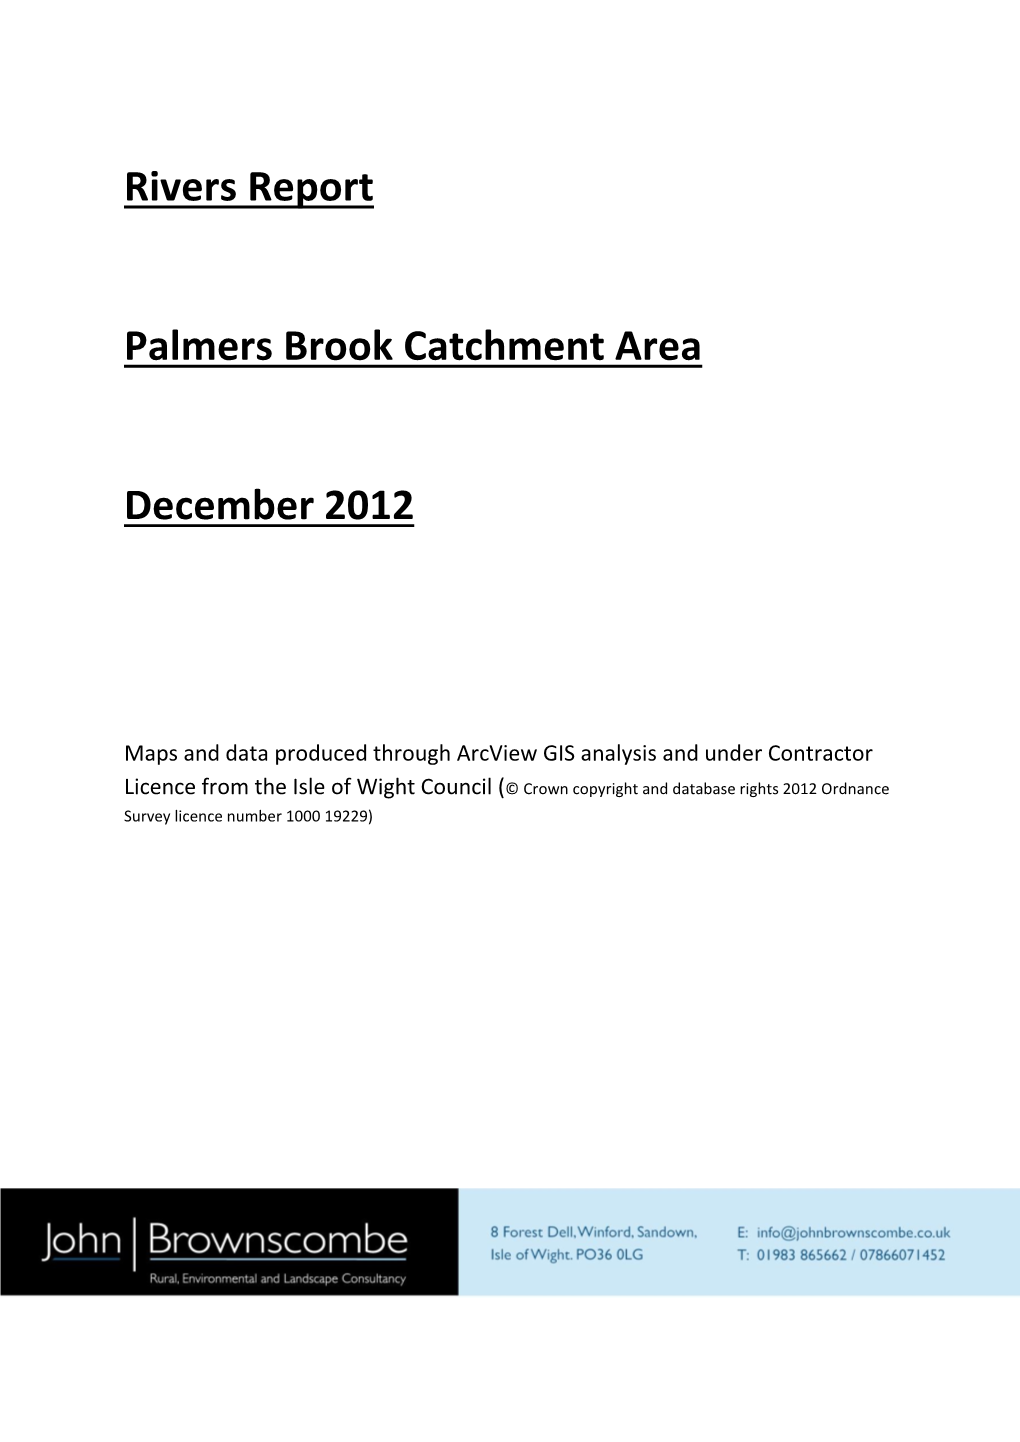 Palmers Brook Catchment Area